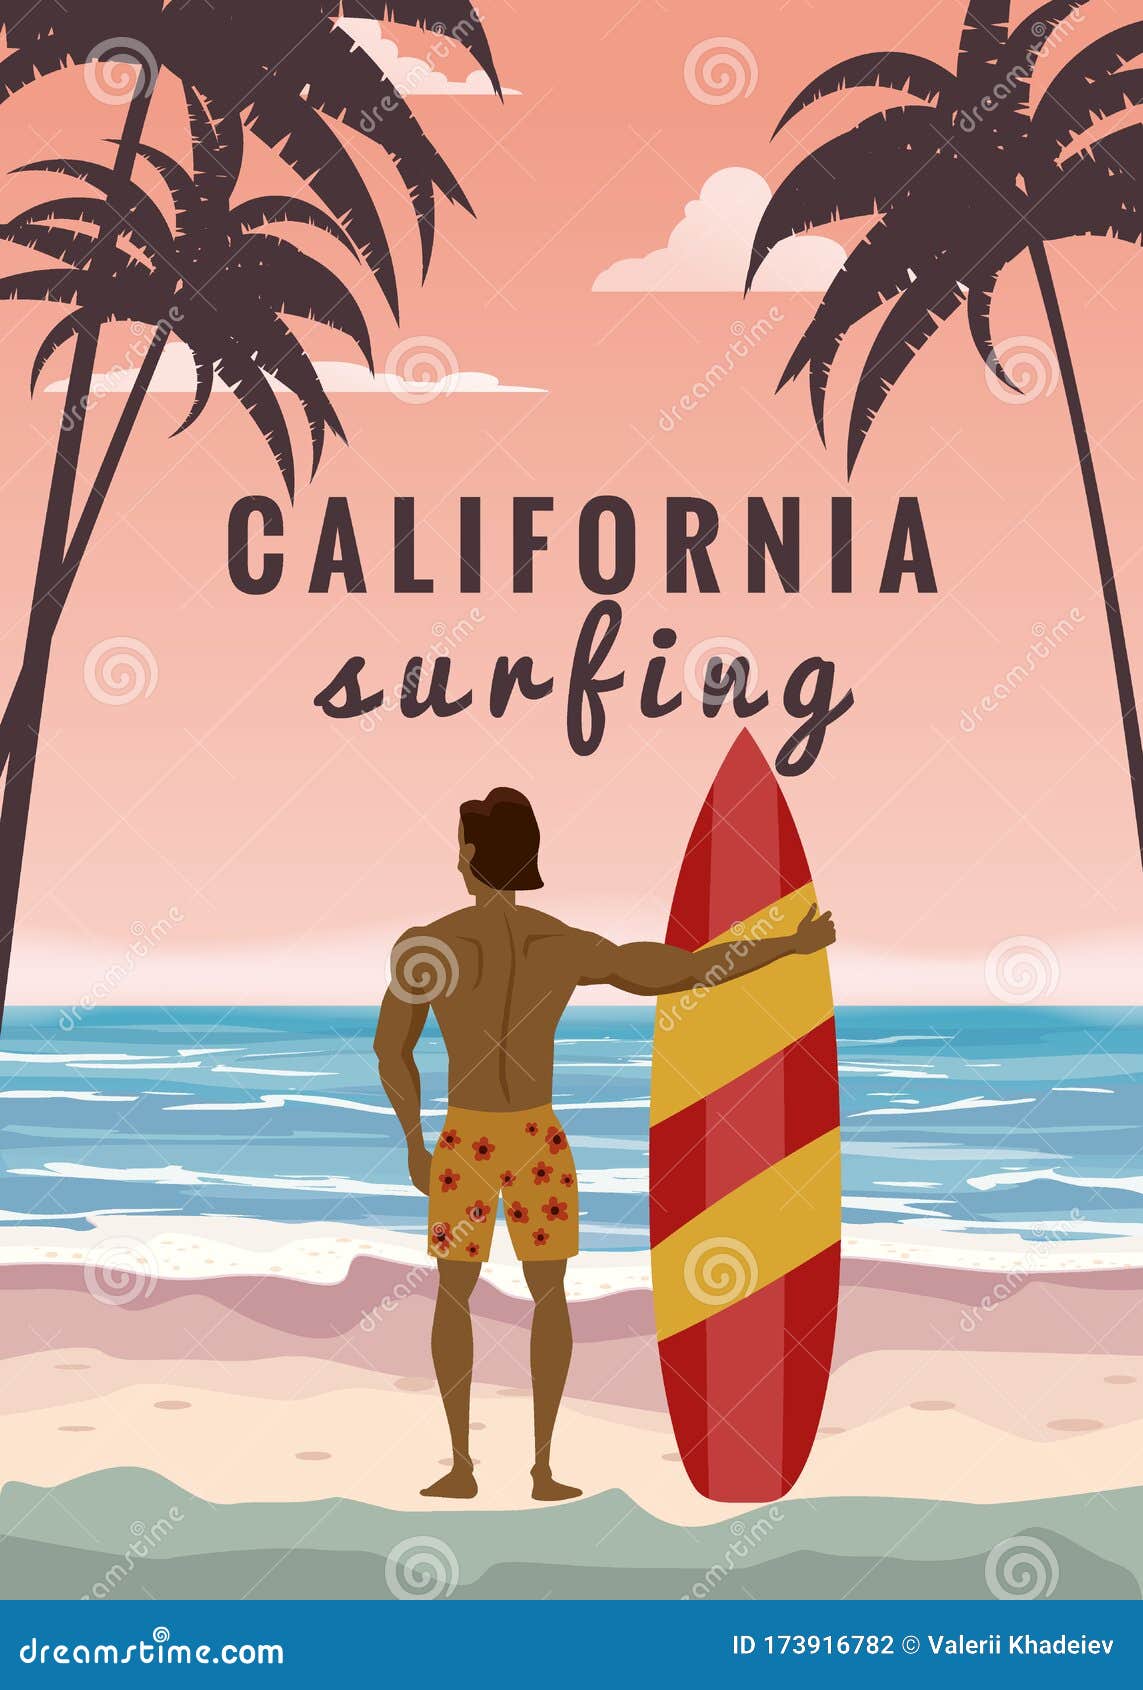 California Adventure Surfing Big Ocean Waves Palm Trees Surfboard Hoodies for Men